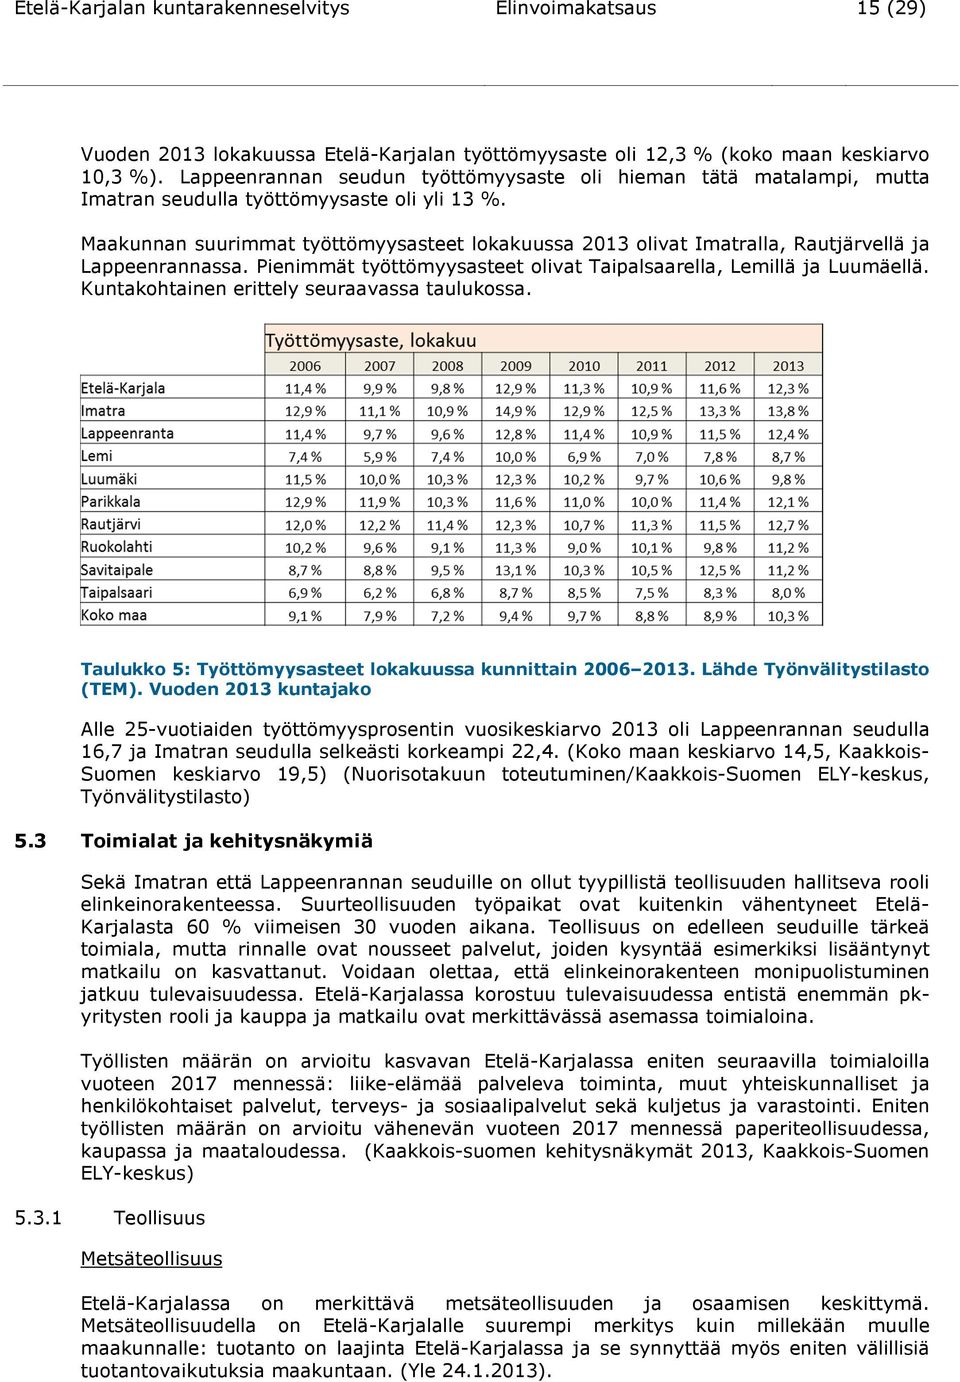 Maakunnan suurimmat työttömyysasteet lokakuussa 2013 olivat Imatralla, Rautjärvellä ja Lappeenrannassa. Pienimmät työttömyysasteet olivat Taipalsaarella, Lemillä ja Luumäellä.